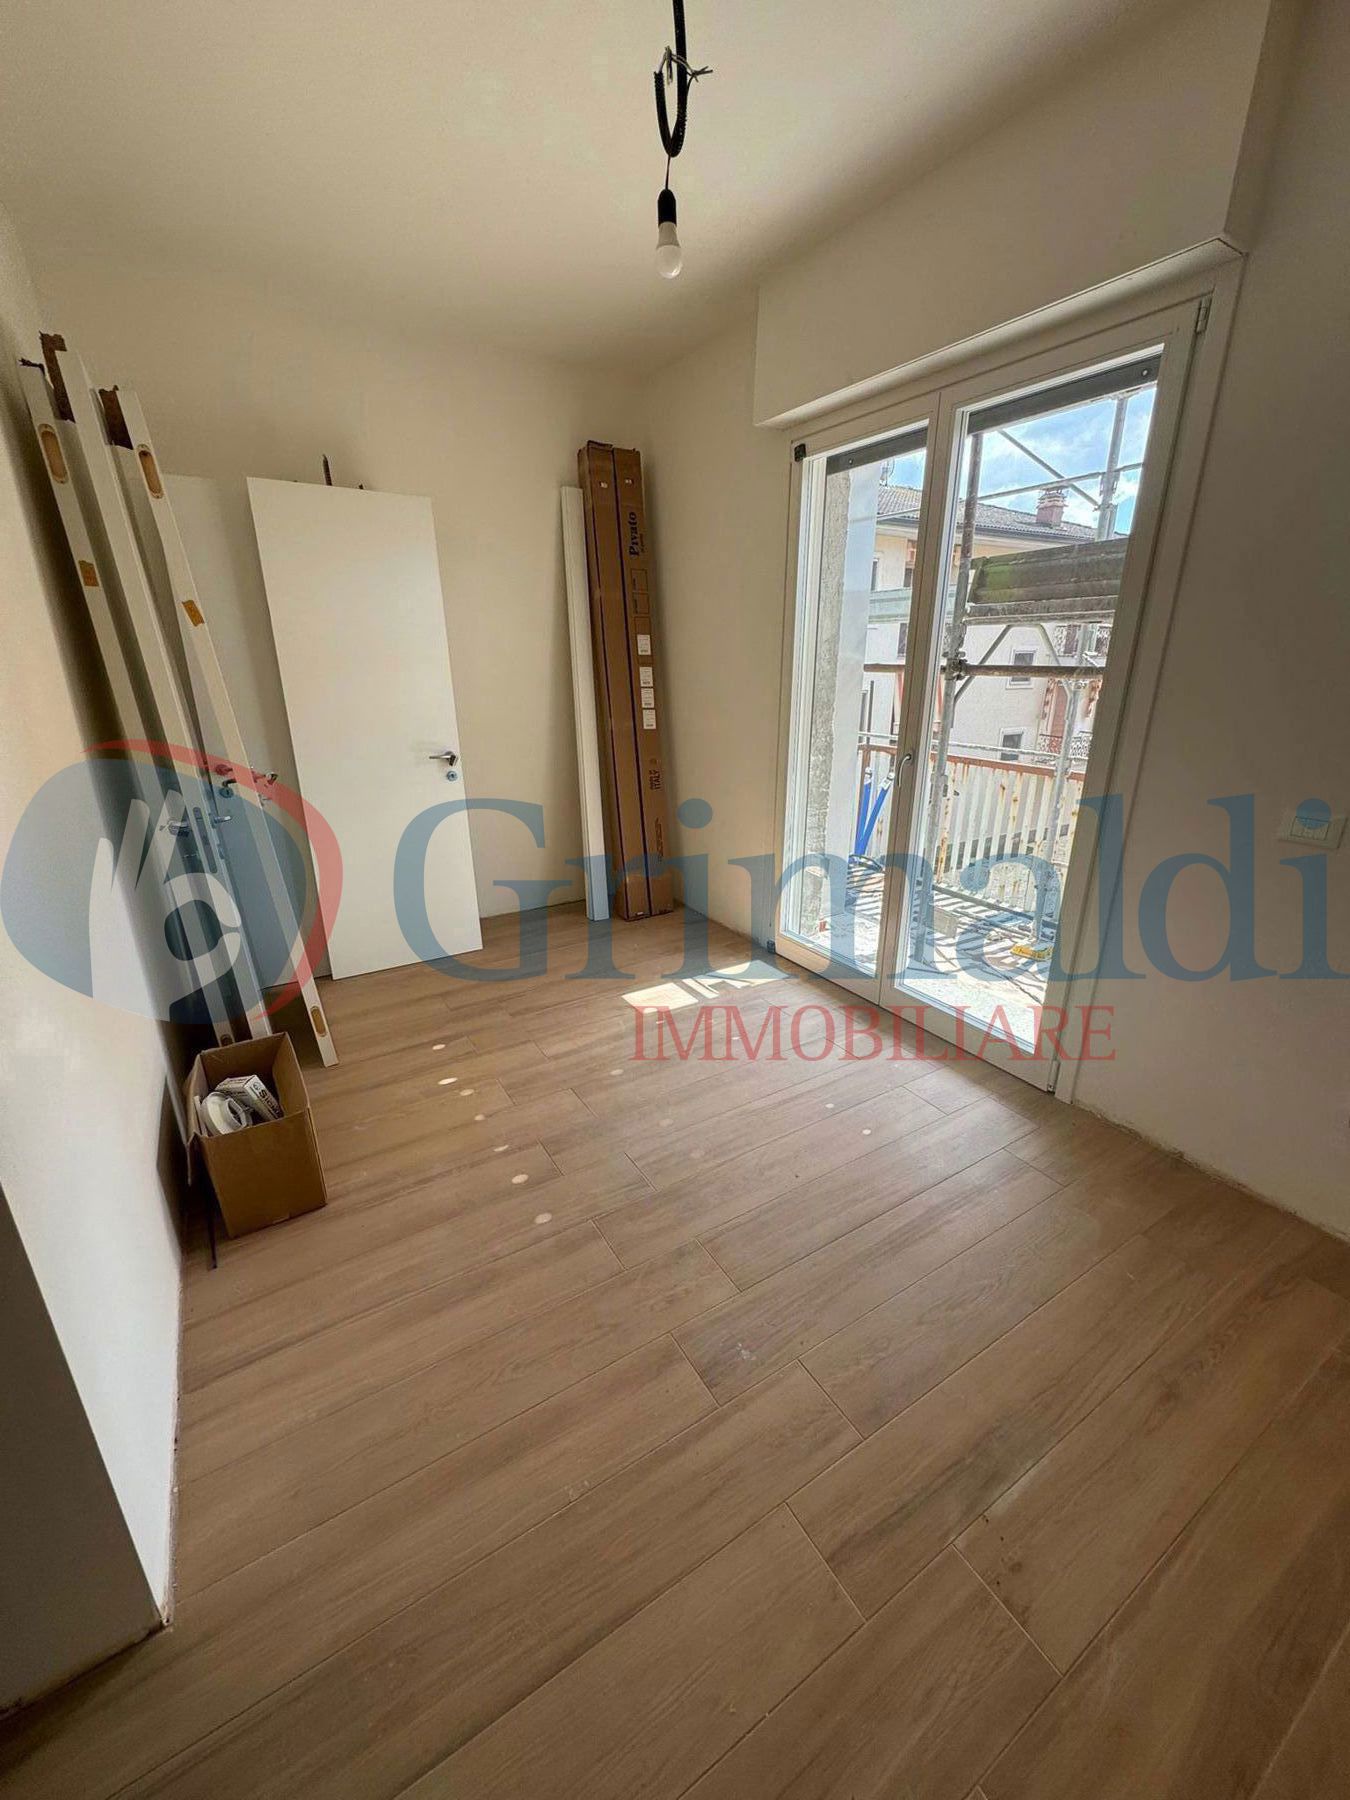 Appartamento di 60 mq in vendita - Sant'Angelo Lodigiano